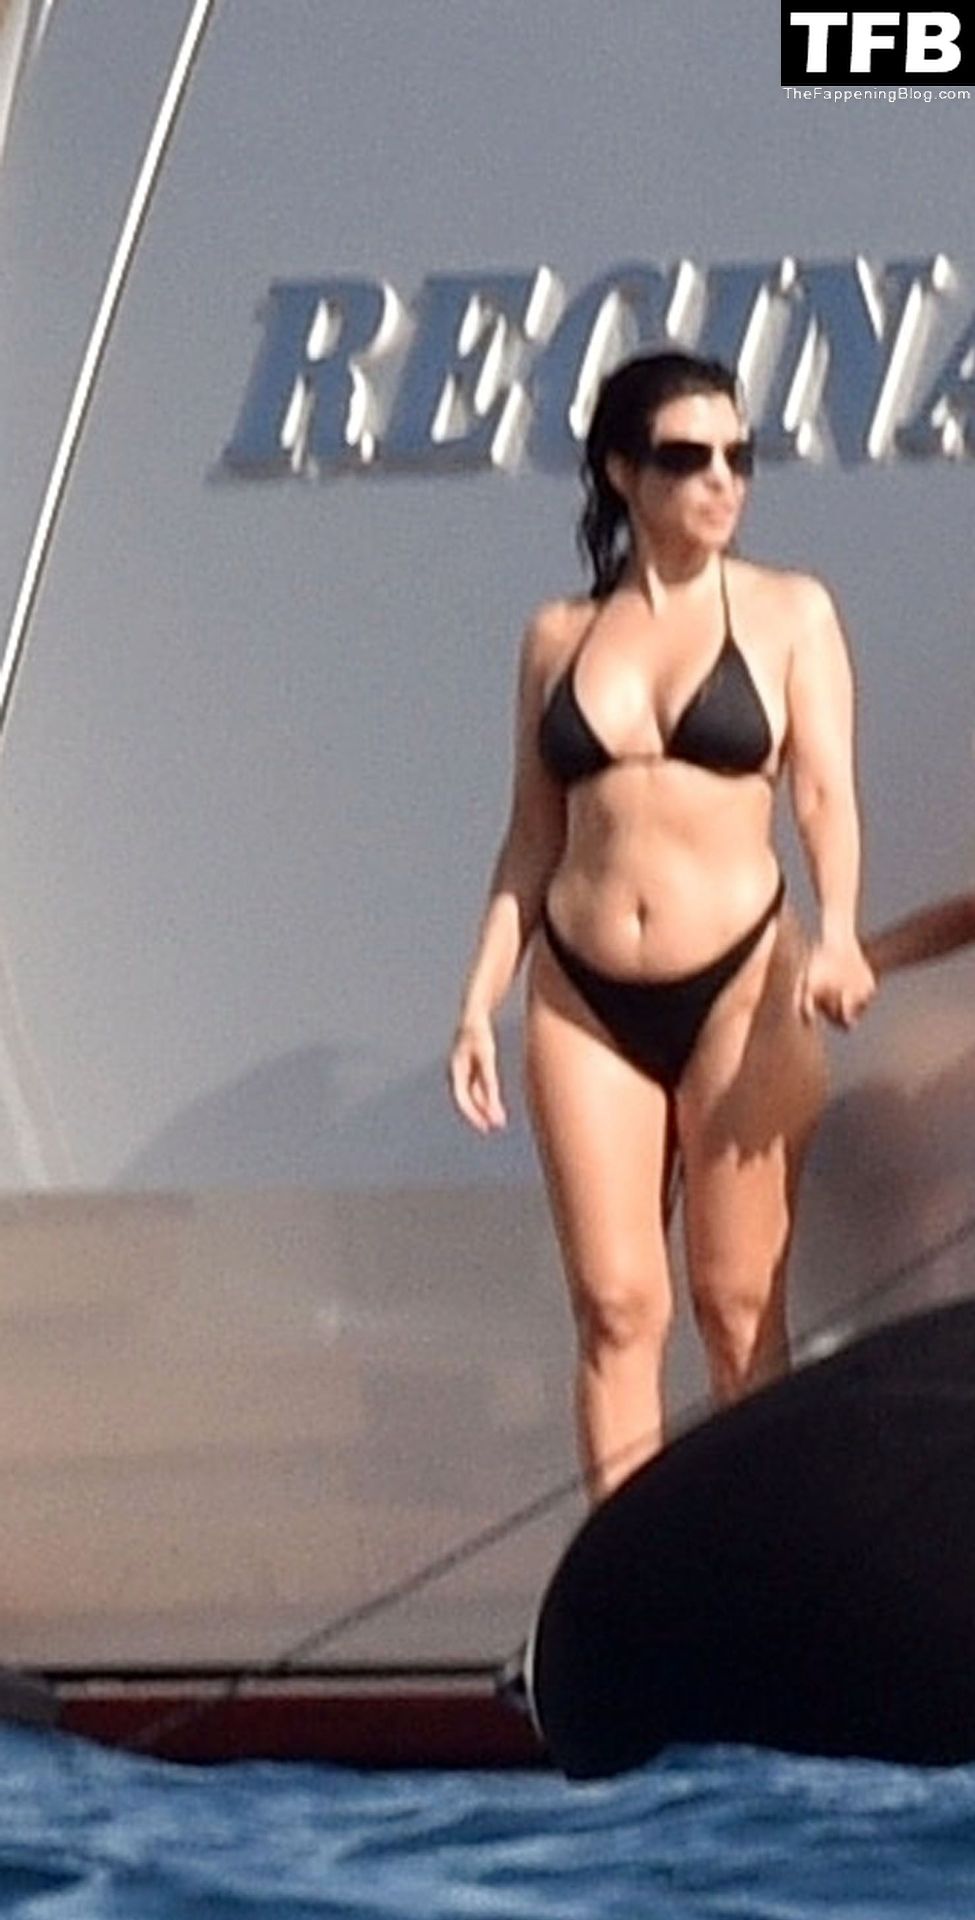 Kourtney-Kardashian-Sexy-The-Fappening-Blog-25-1.jpg